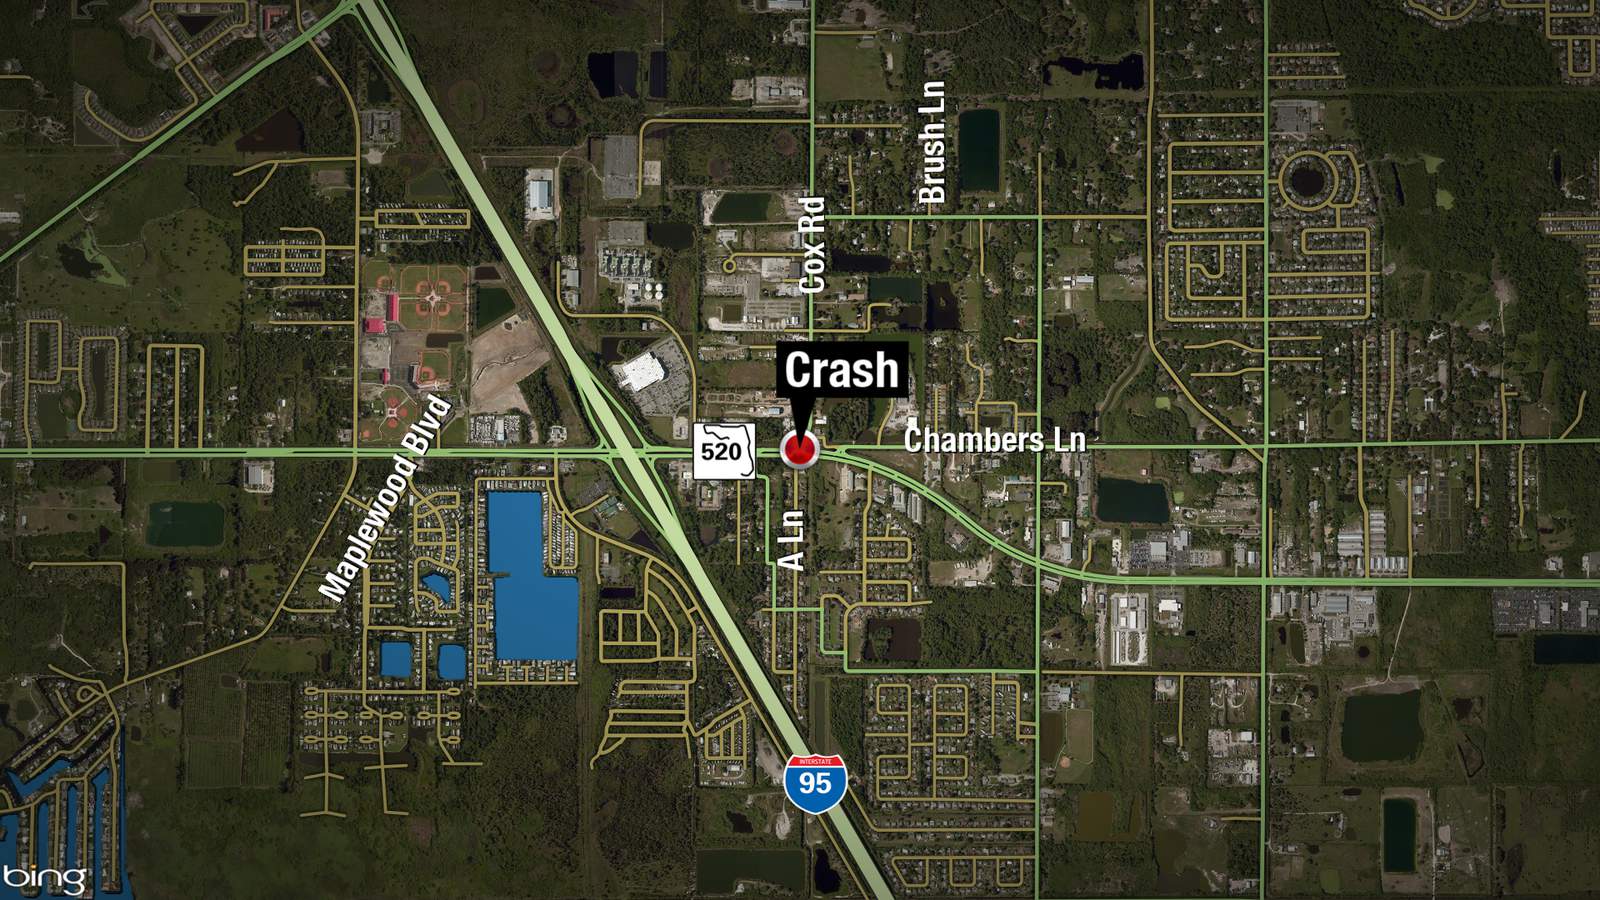 27-year-old killed in crash on SR 520 in Brevard County